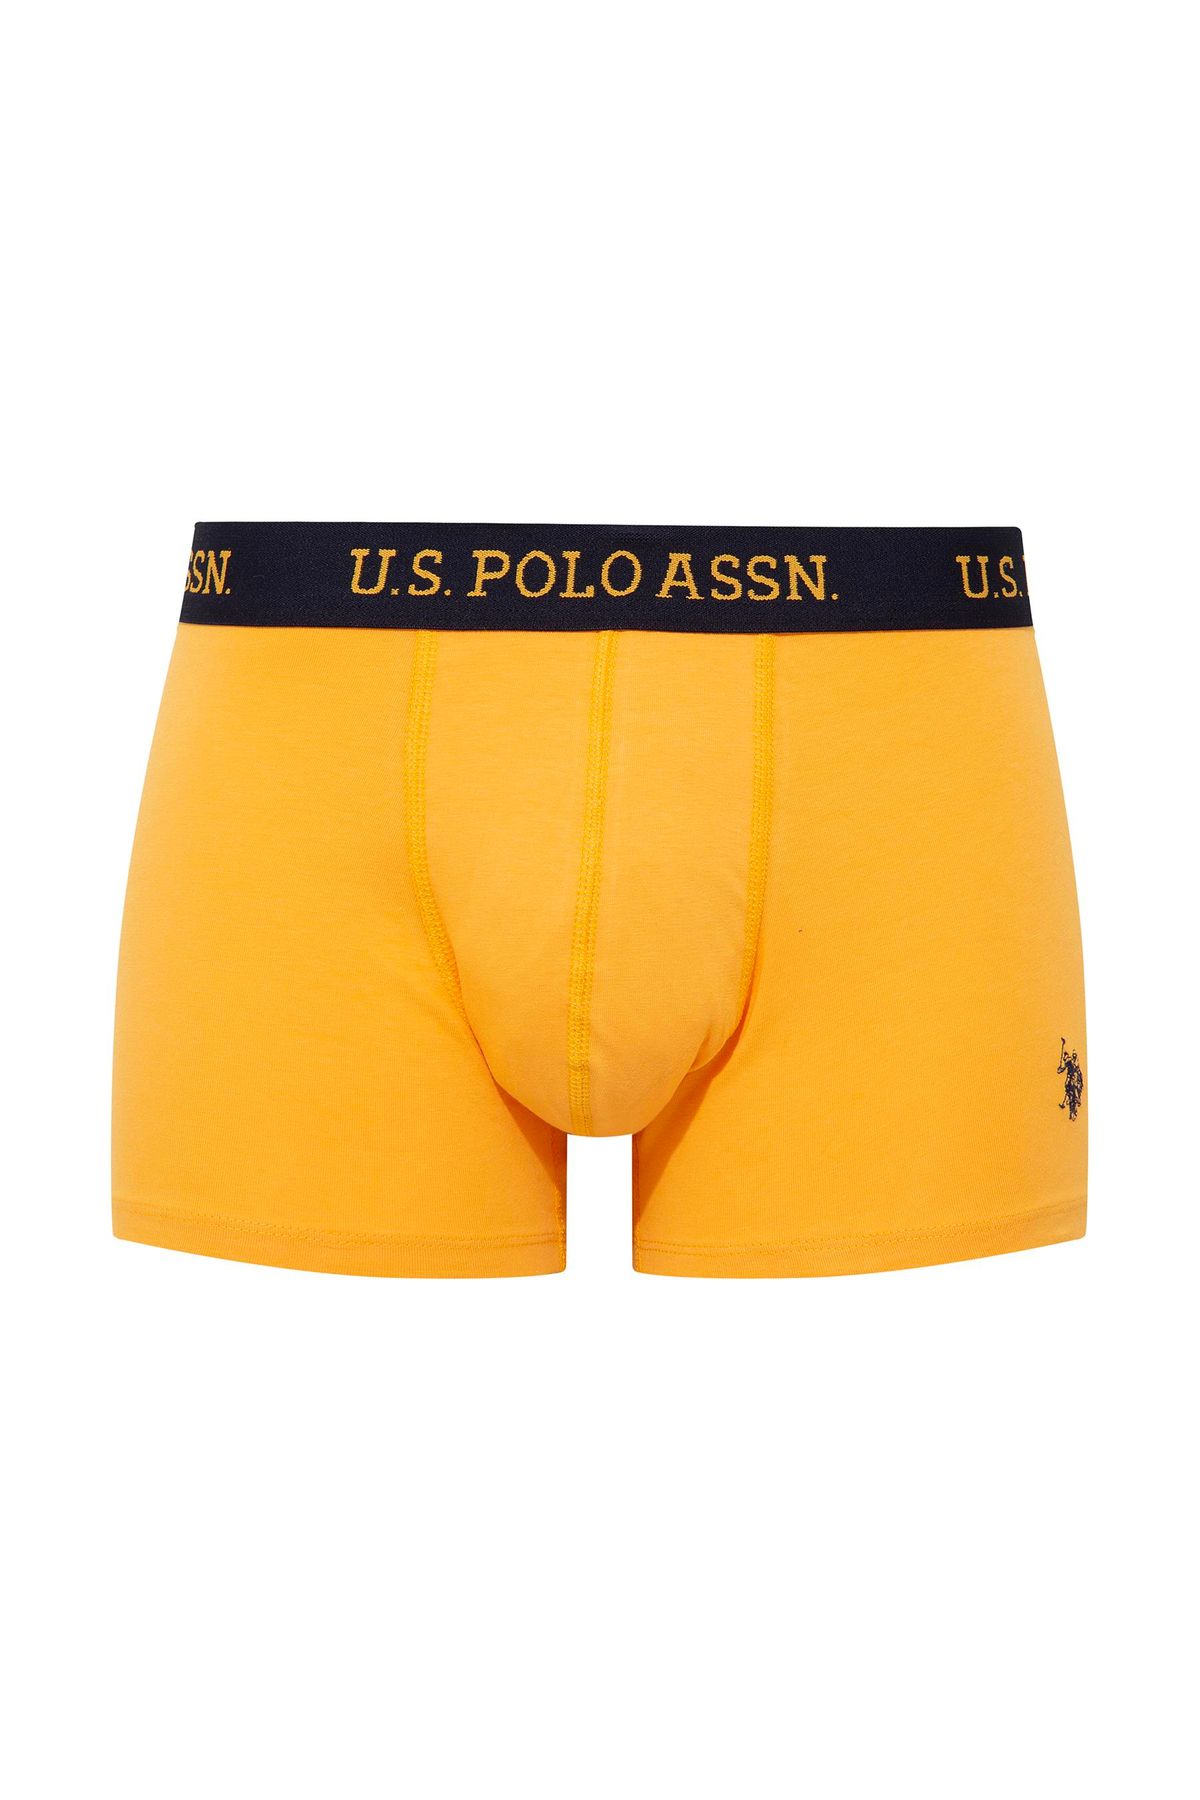 U.S. Polo Assn. U.S. Polo Assn. - Erkek İç Giyim Sarı Baskılı & Lacivert 3 'lü Boxer Set L.2.0.1.L.0.90